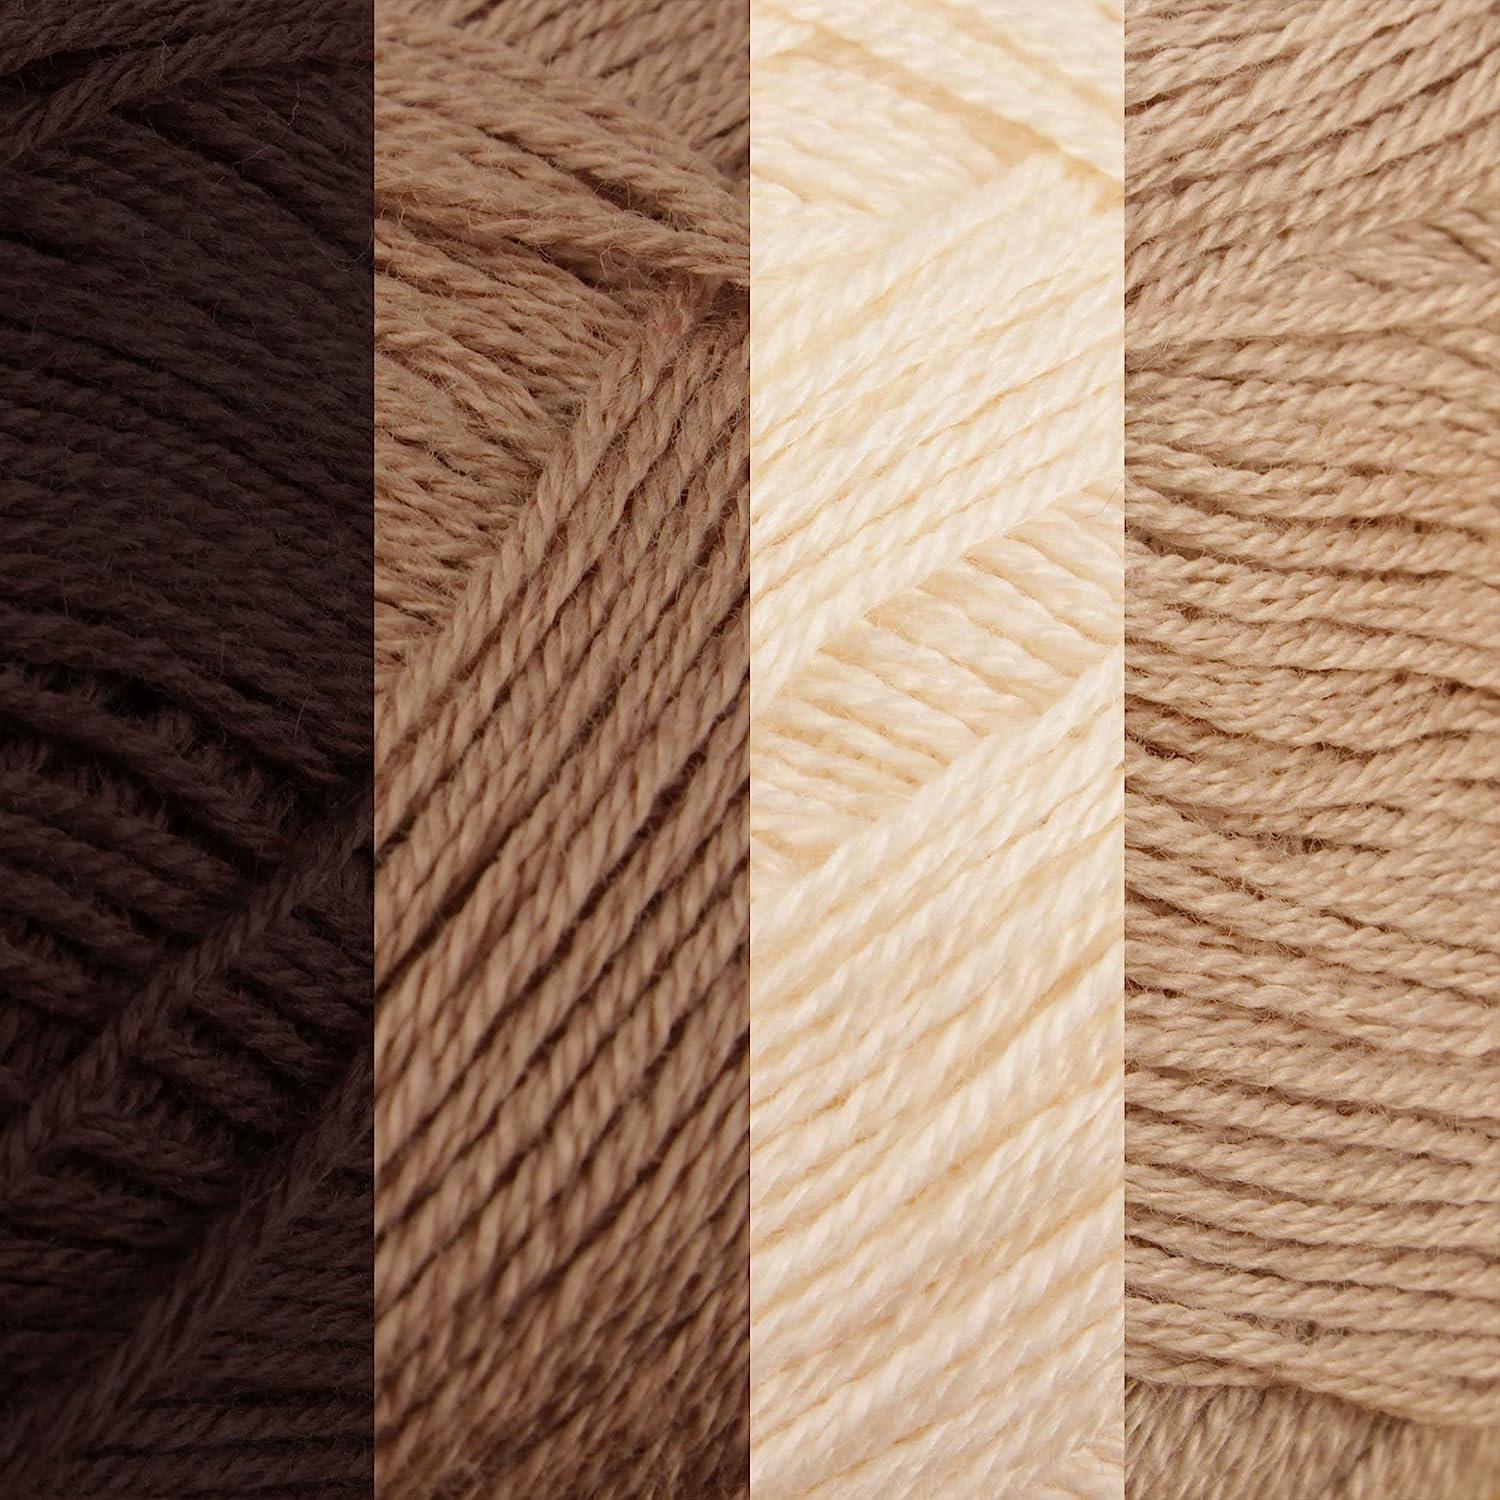  JubileeYarn Baby Soft Bamboo Cotton Yarn - 50g/Skein